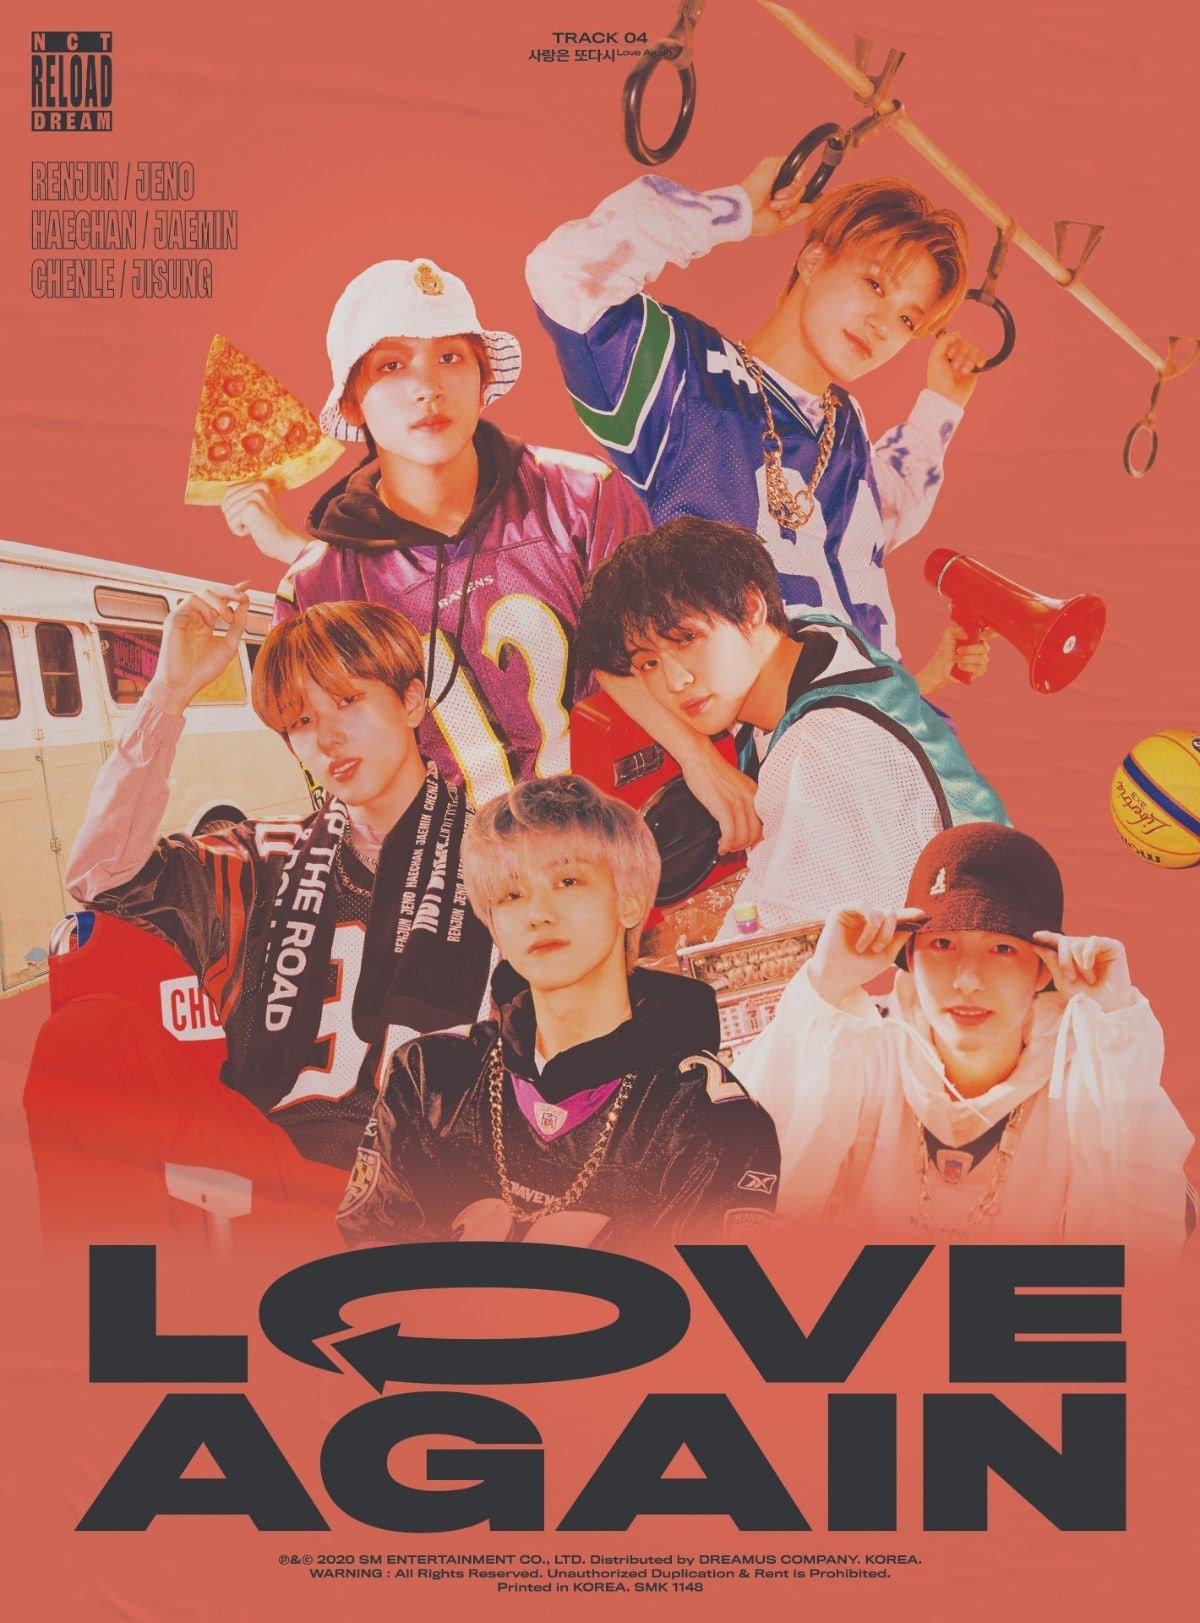 엔시티 드림 NCT DREAM TRACK VIDEO #3 : Poster Image #사랑은또다시_LoveAgain